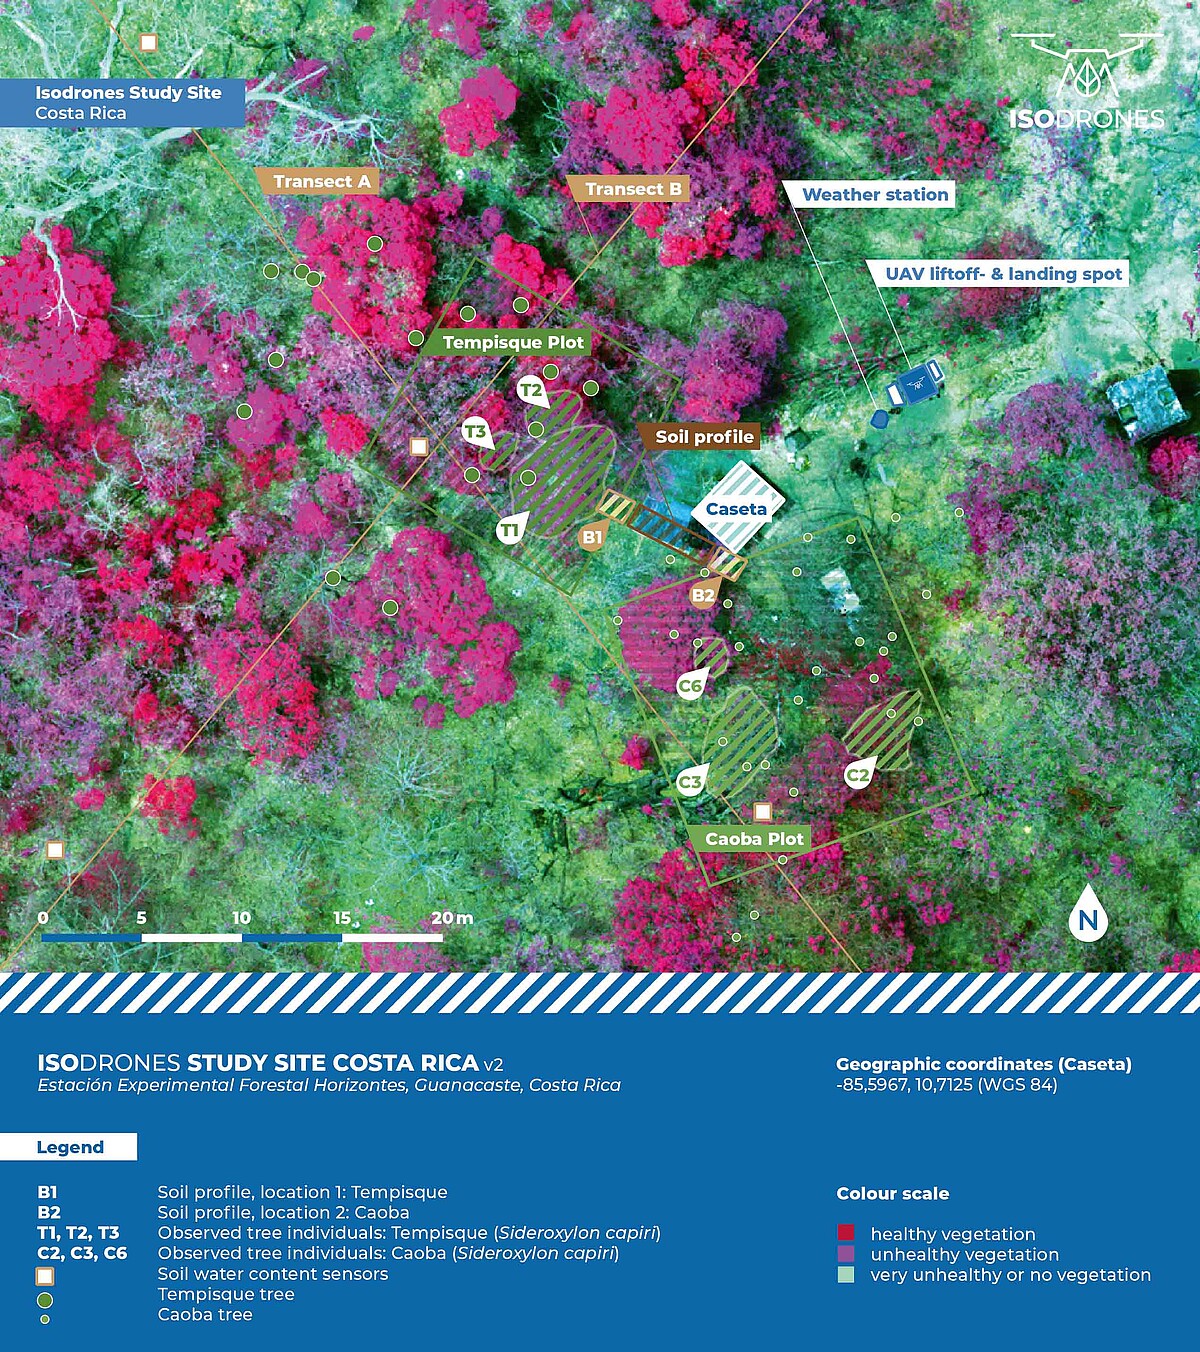 Das Luftbild eines Waldstücks ist in Messpunkte und Segmente eingeteilt und zeigt einzelne Baumkronen. Der Gesundheitszustand der Vegetation ist farbig markiert.